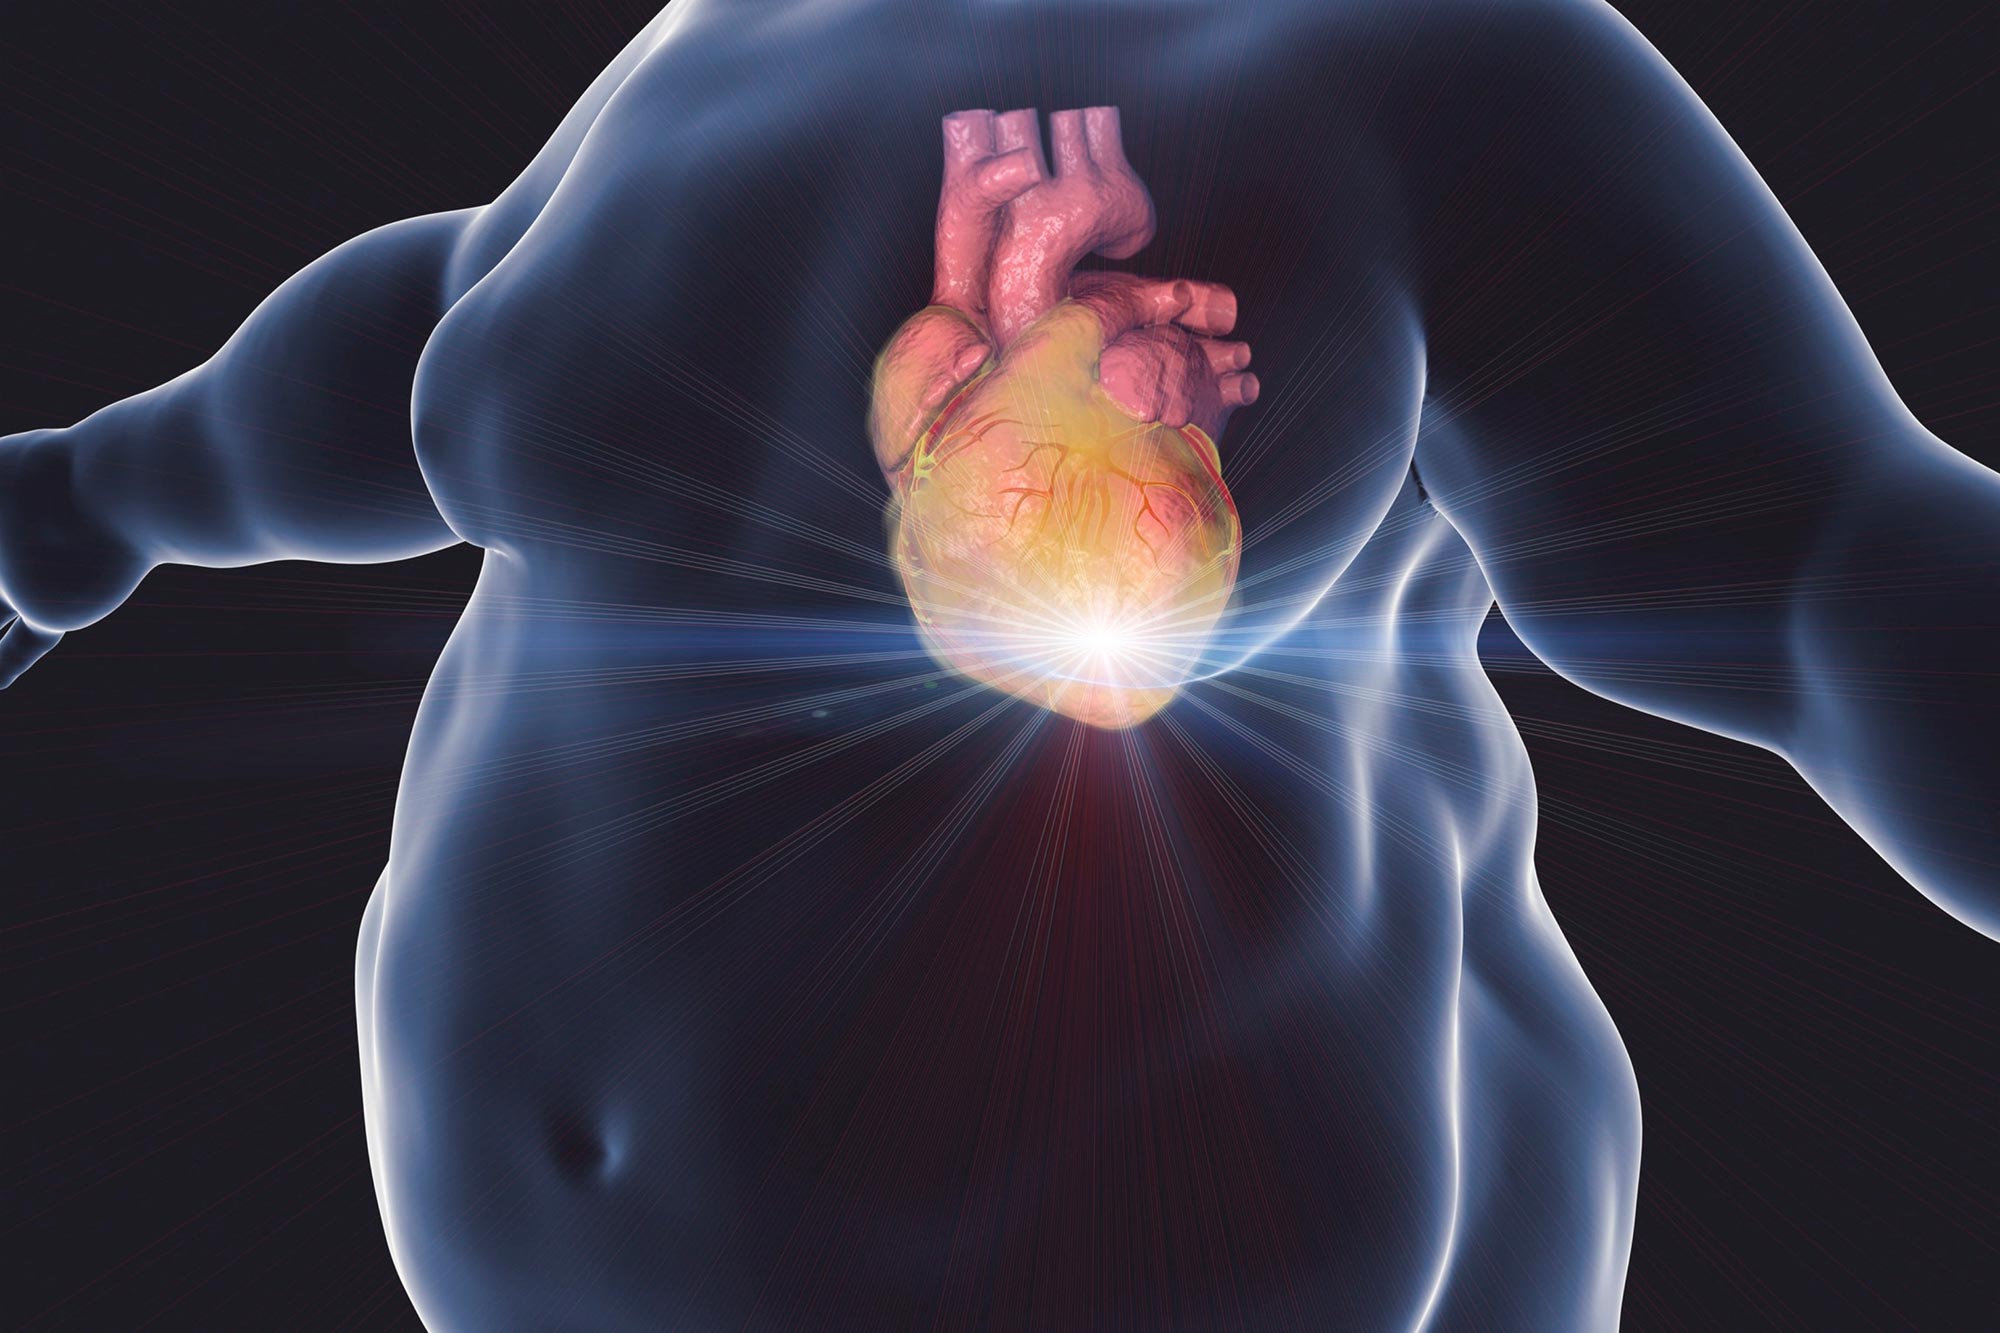 Ở những người bị béo phì, tim cần làm việc nhiều hơn để bơm máu đi khắp cơ thể, dẫn đến huyết áp cao